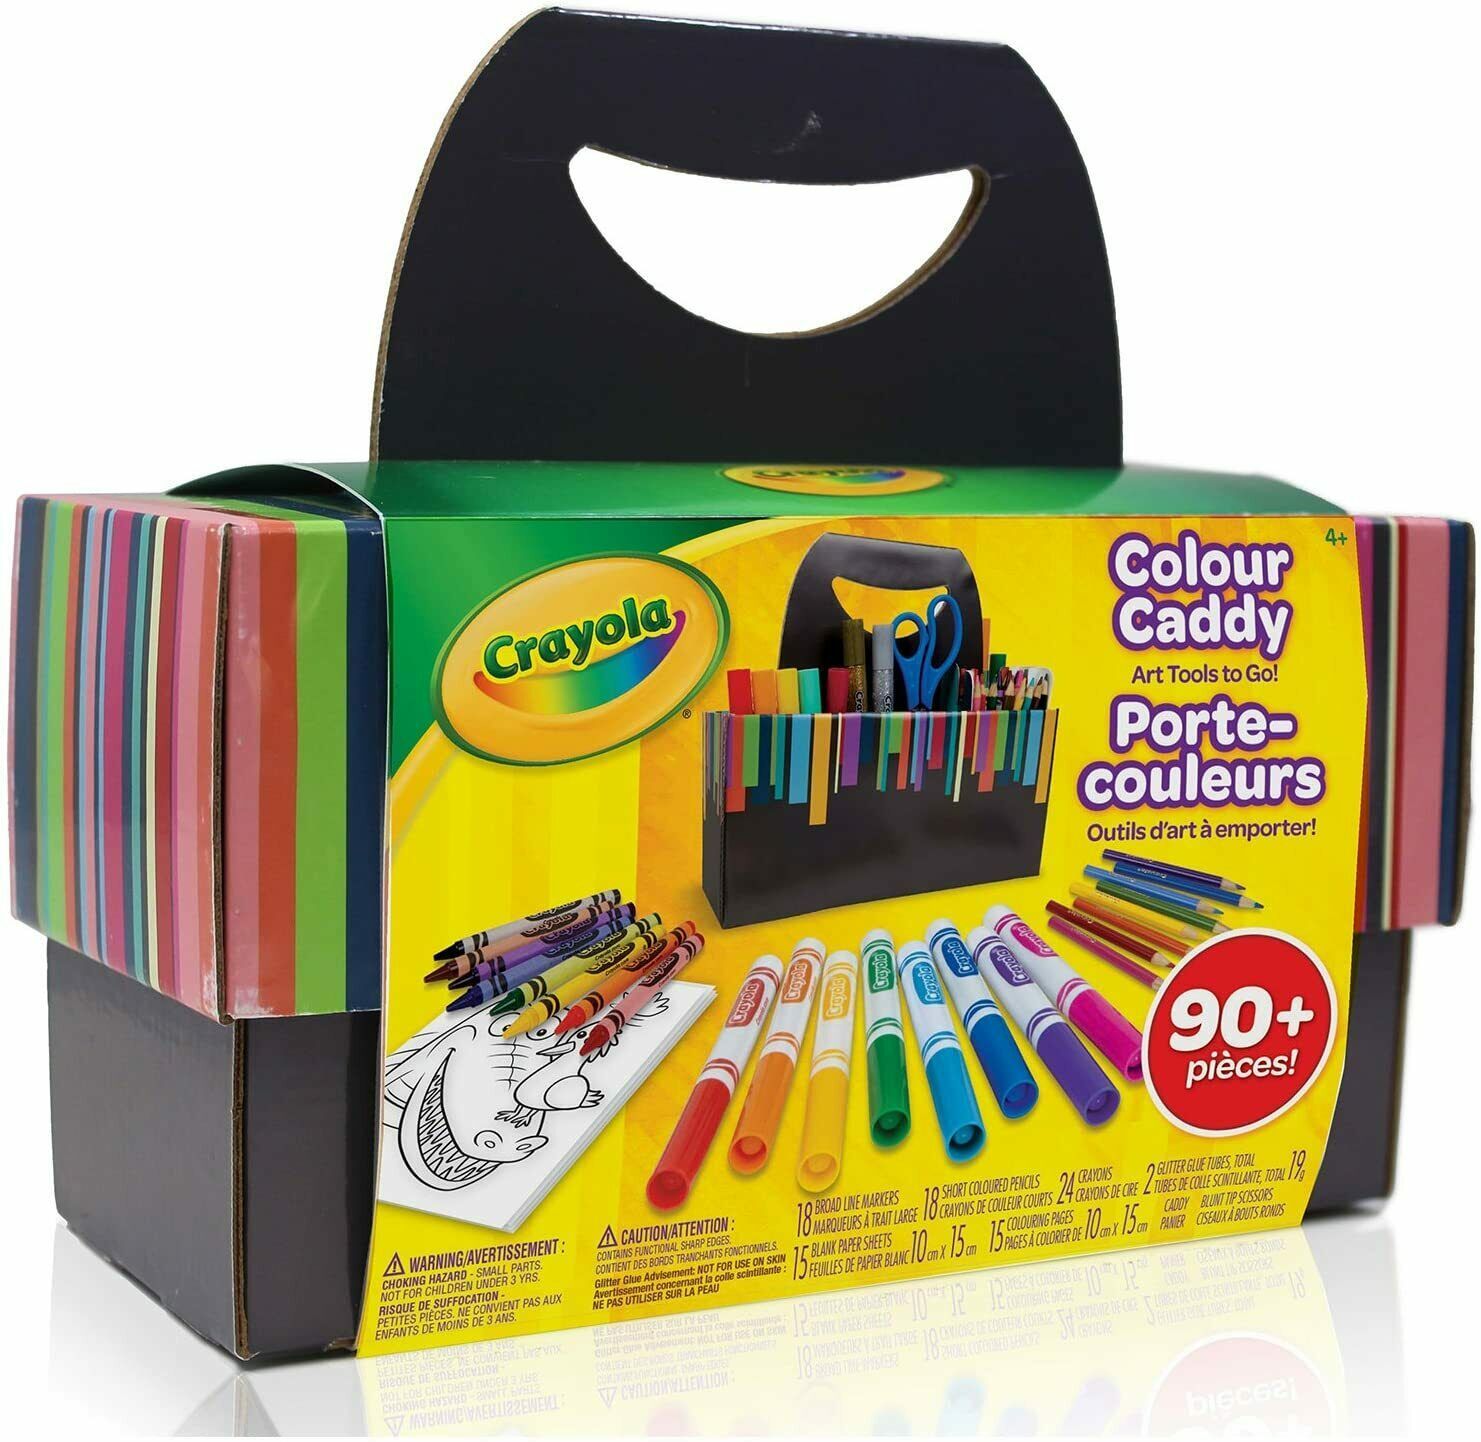 Brand New Crayola Colour Caddy, Art Supplies Kids, Travel Art Set, 90+ Pieces - $28.99